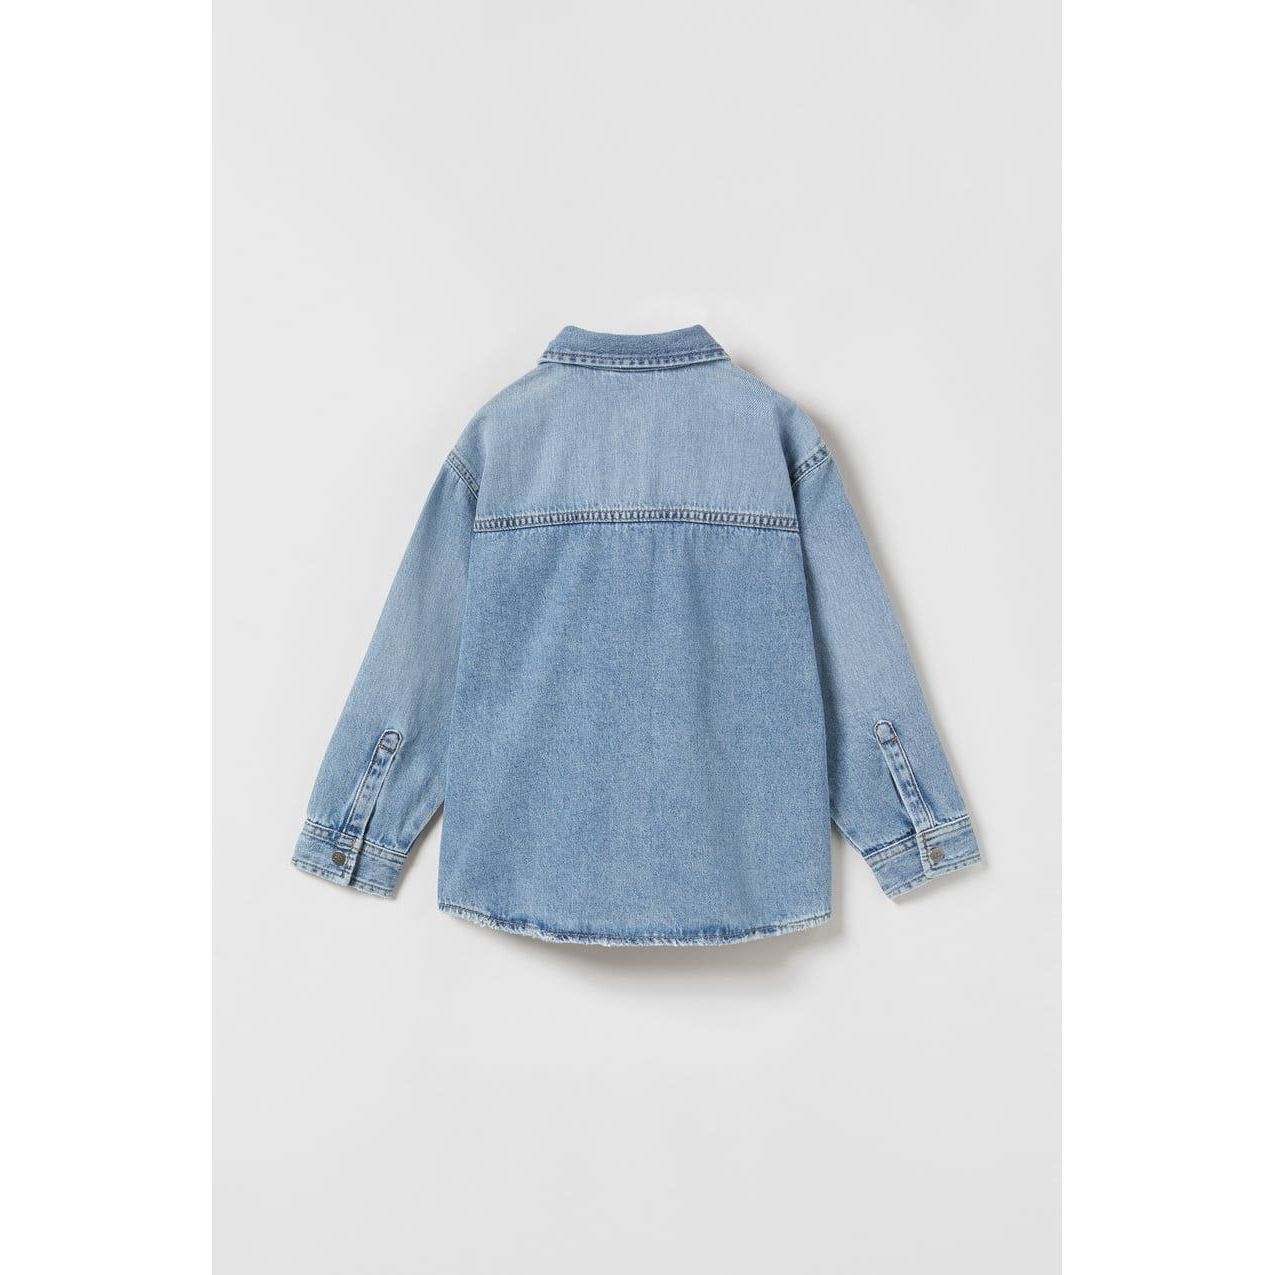 Стильная детская джинсовая рубашка Zara 116 см